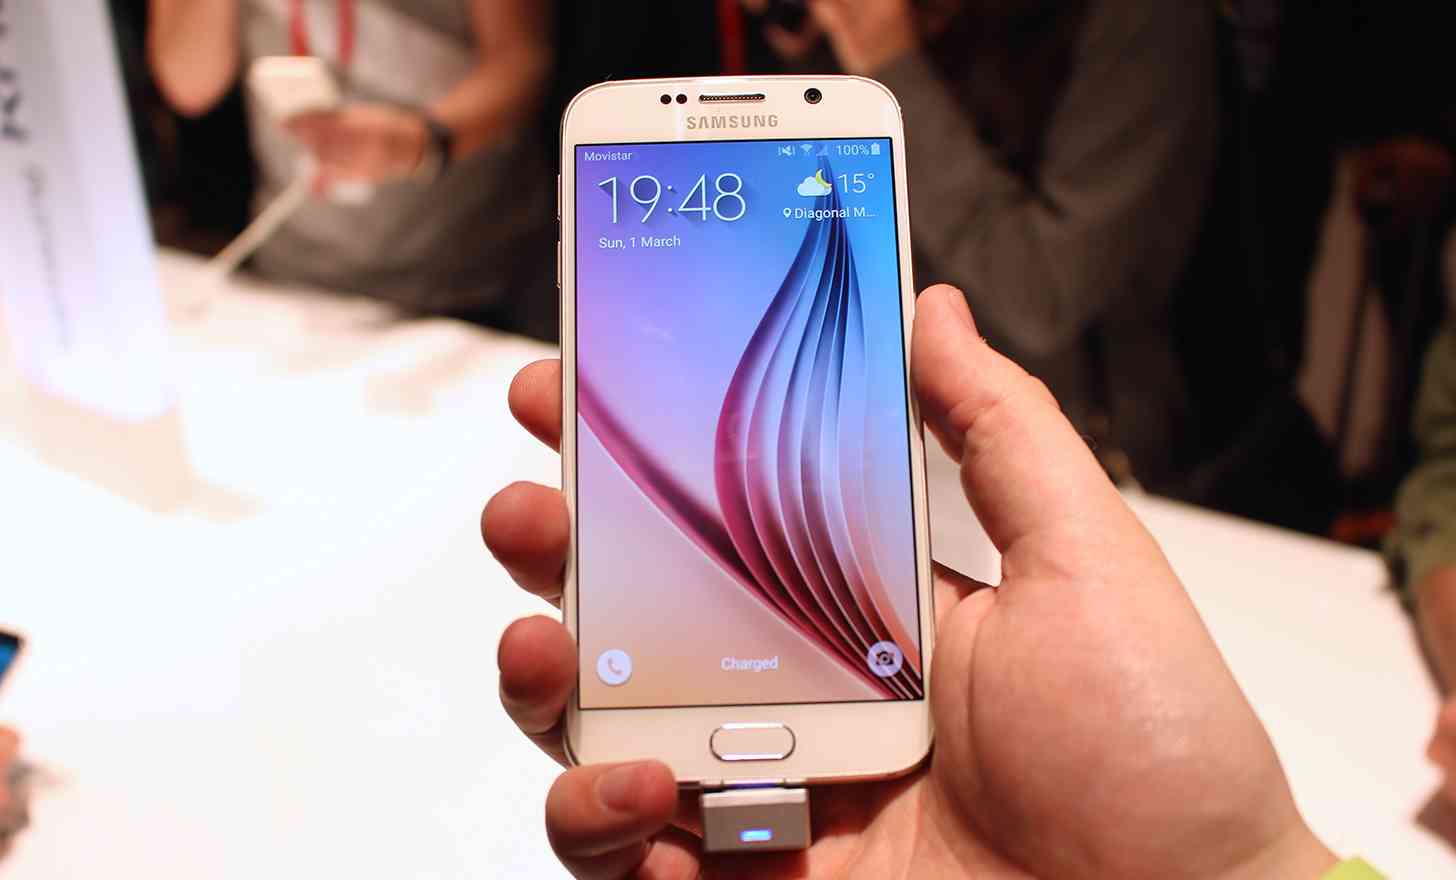 Samsung Galaxy S6 white hands on